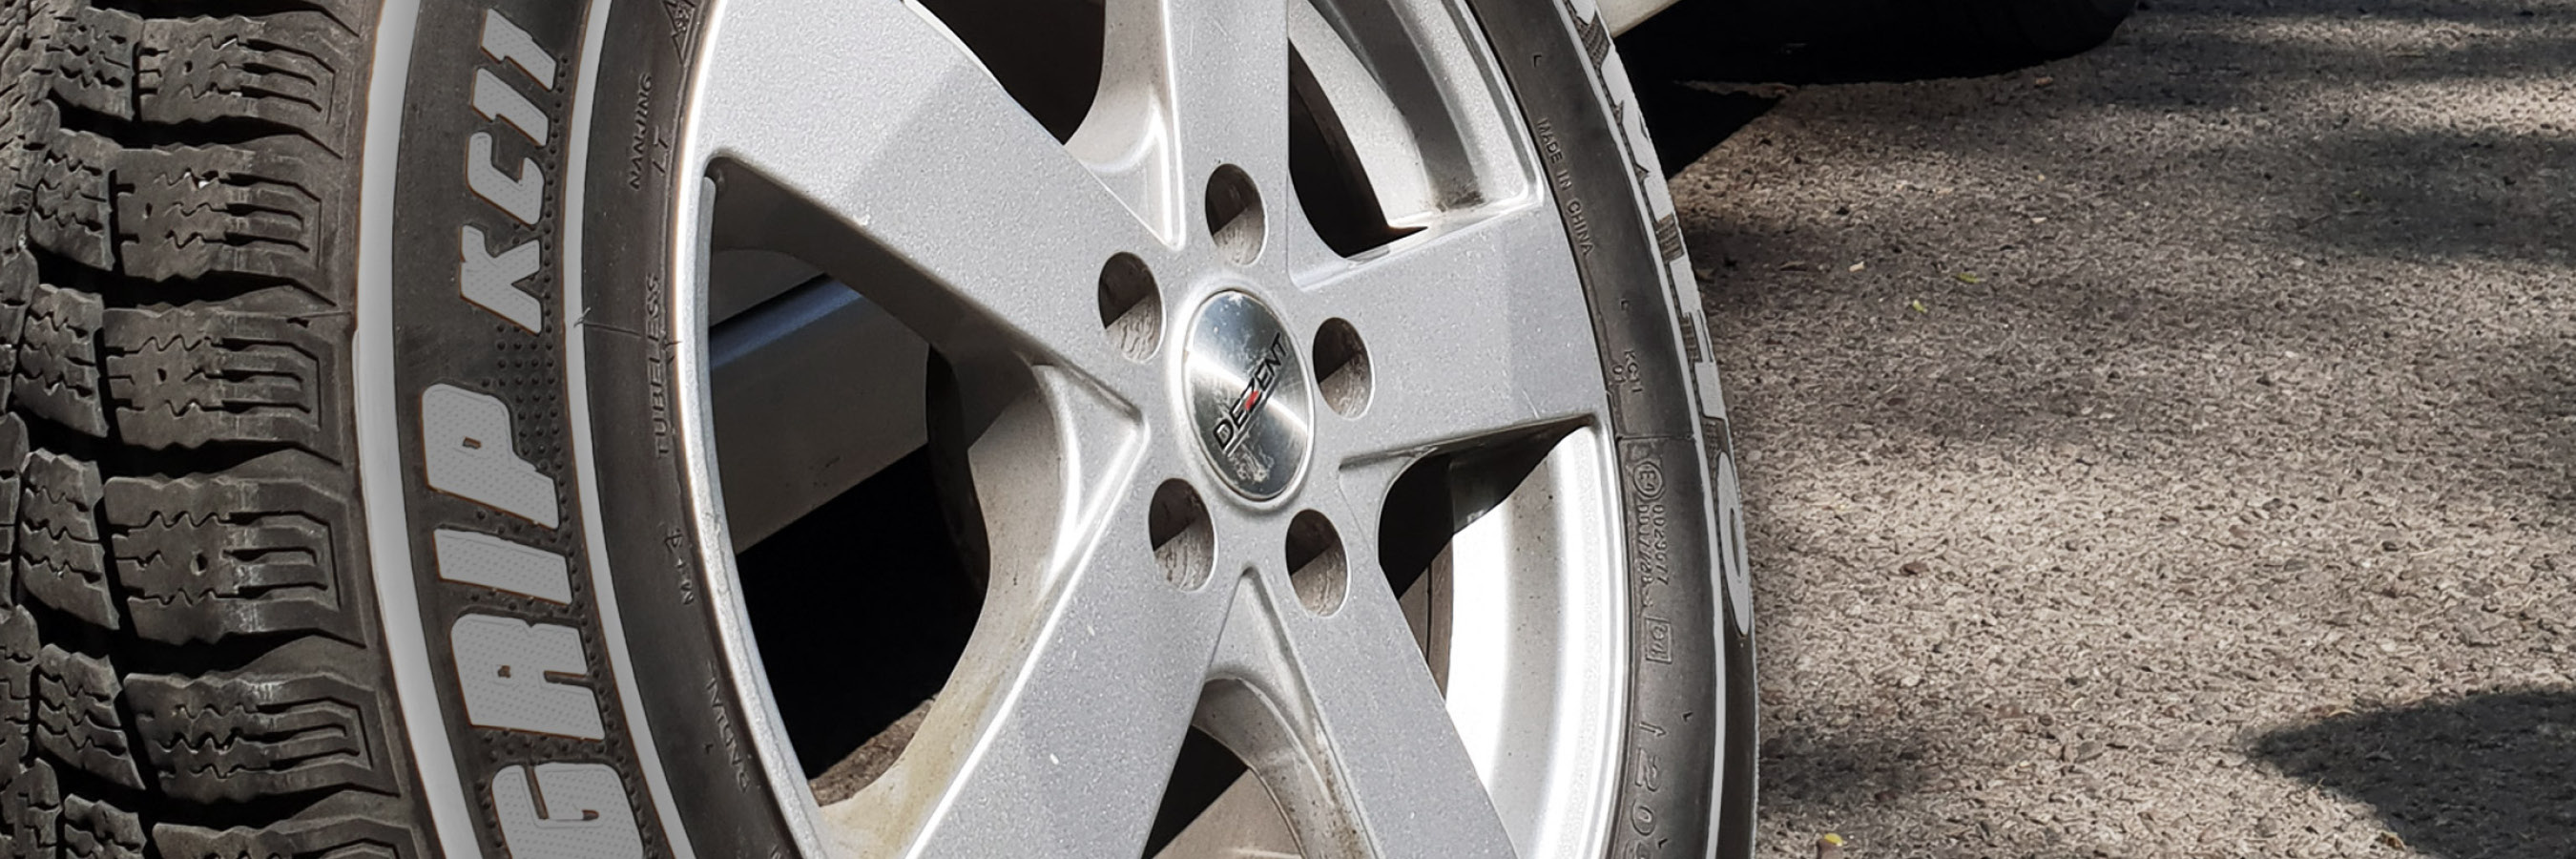 Mal på dæk – Opfrisk dæk med hvide dækpenne